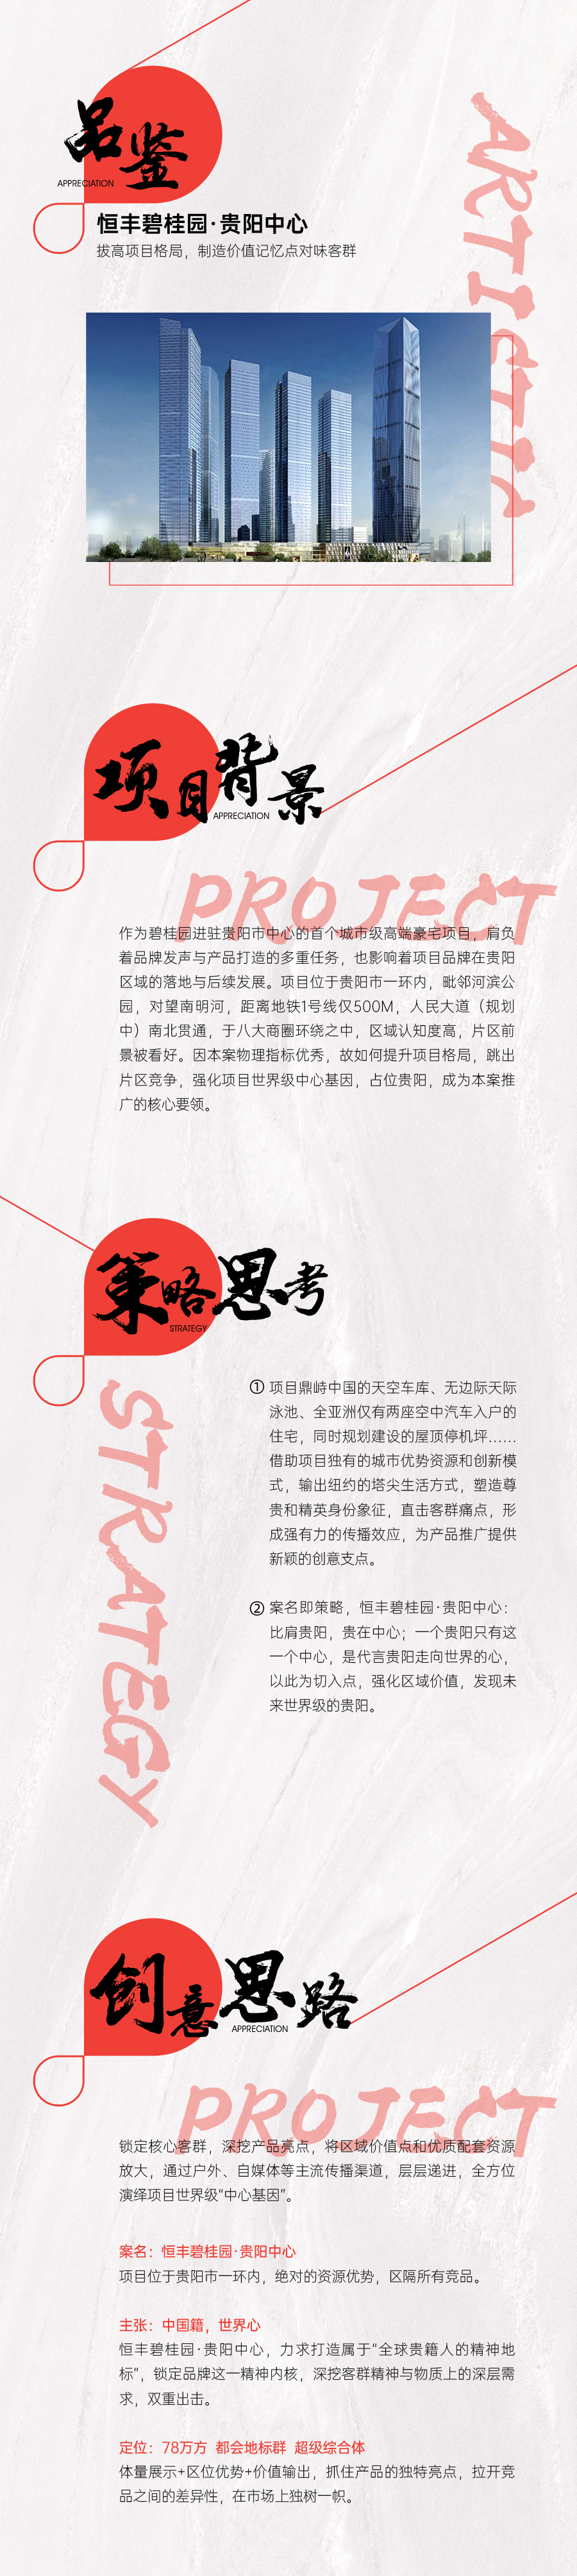 『恒豐碧桂園·貴陽中心』地產綜合體 品牌包裝 品牌VI設計圖0